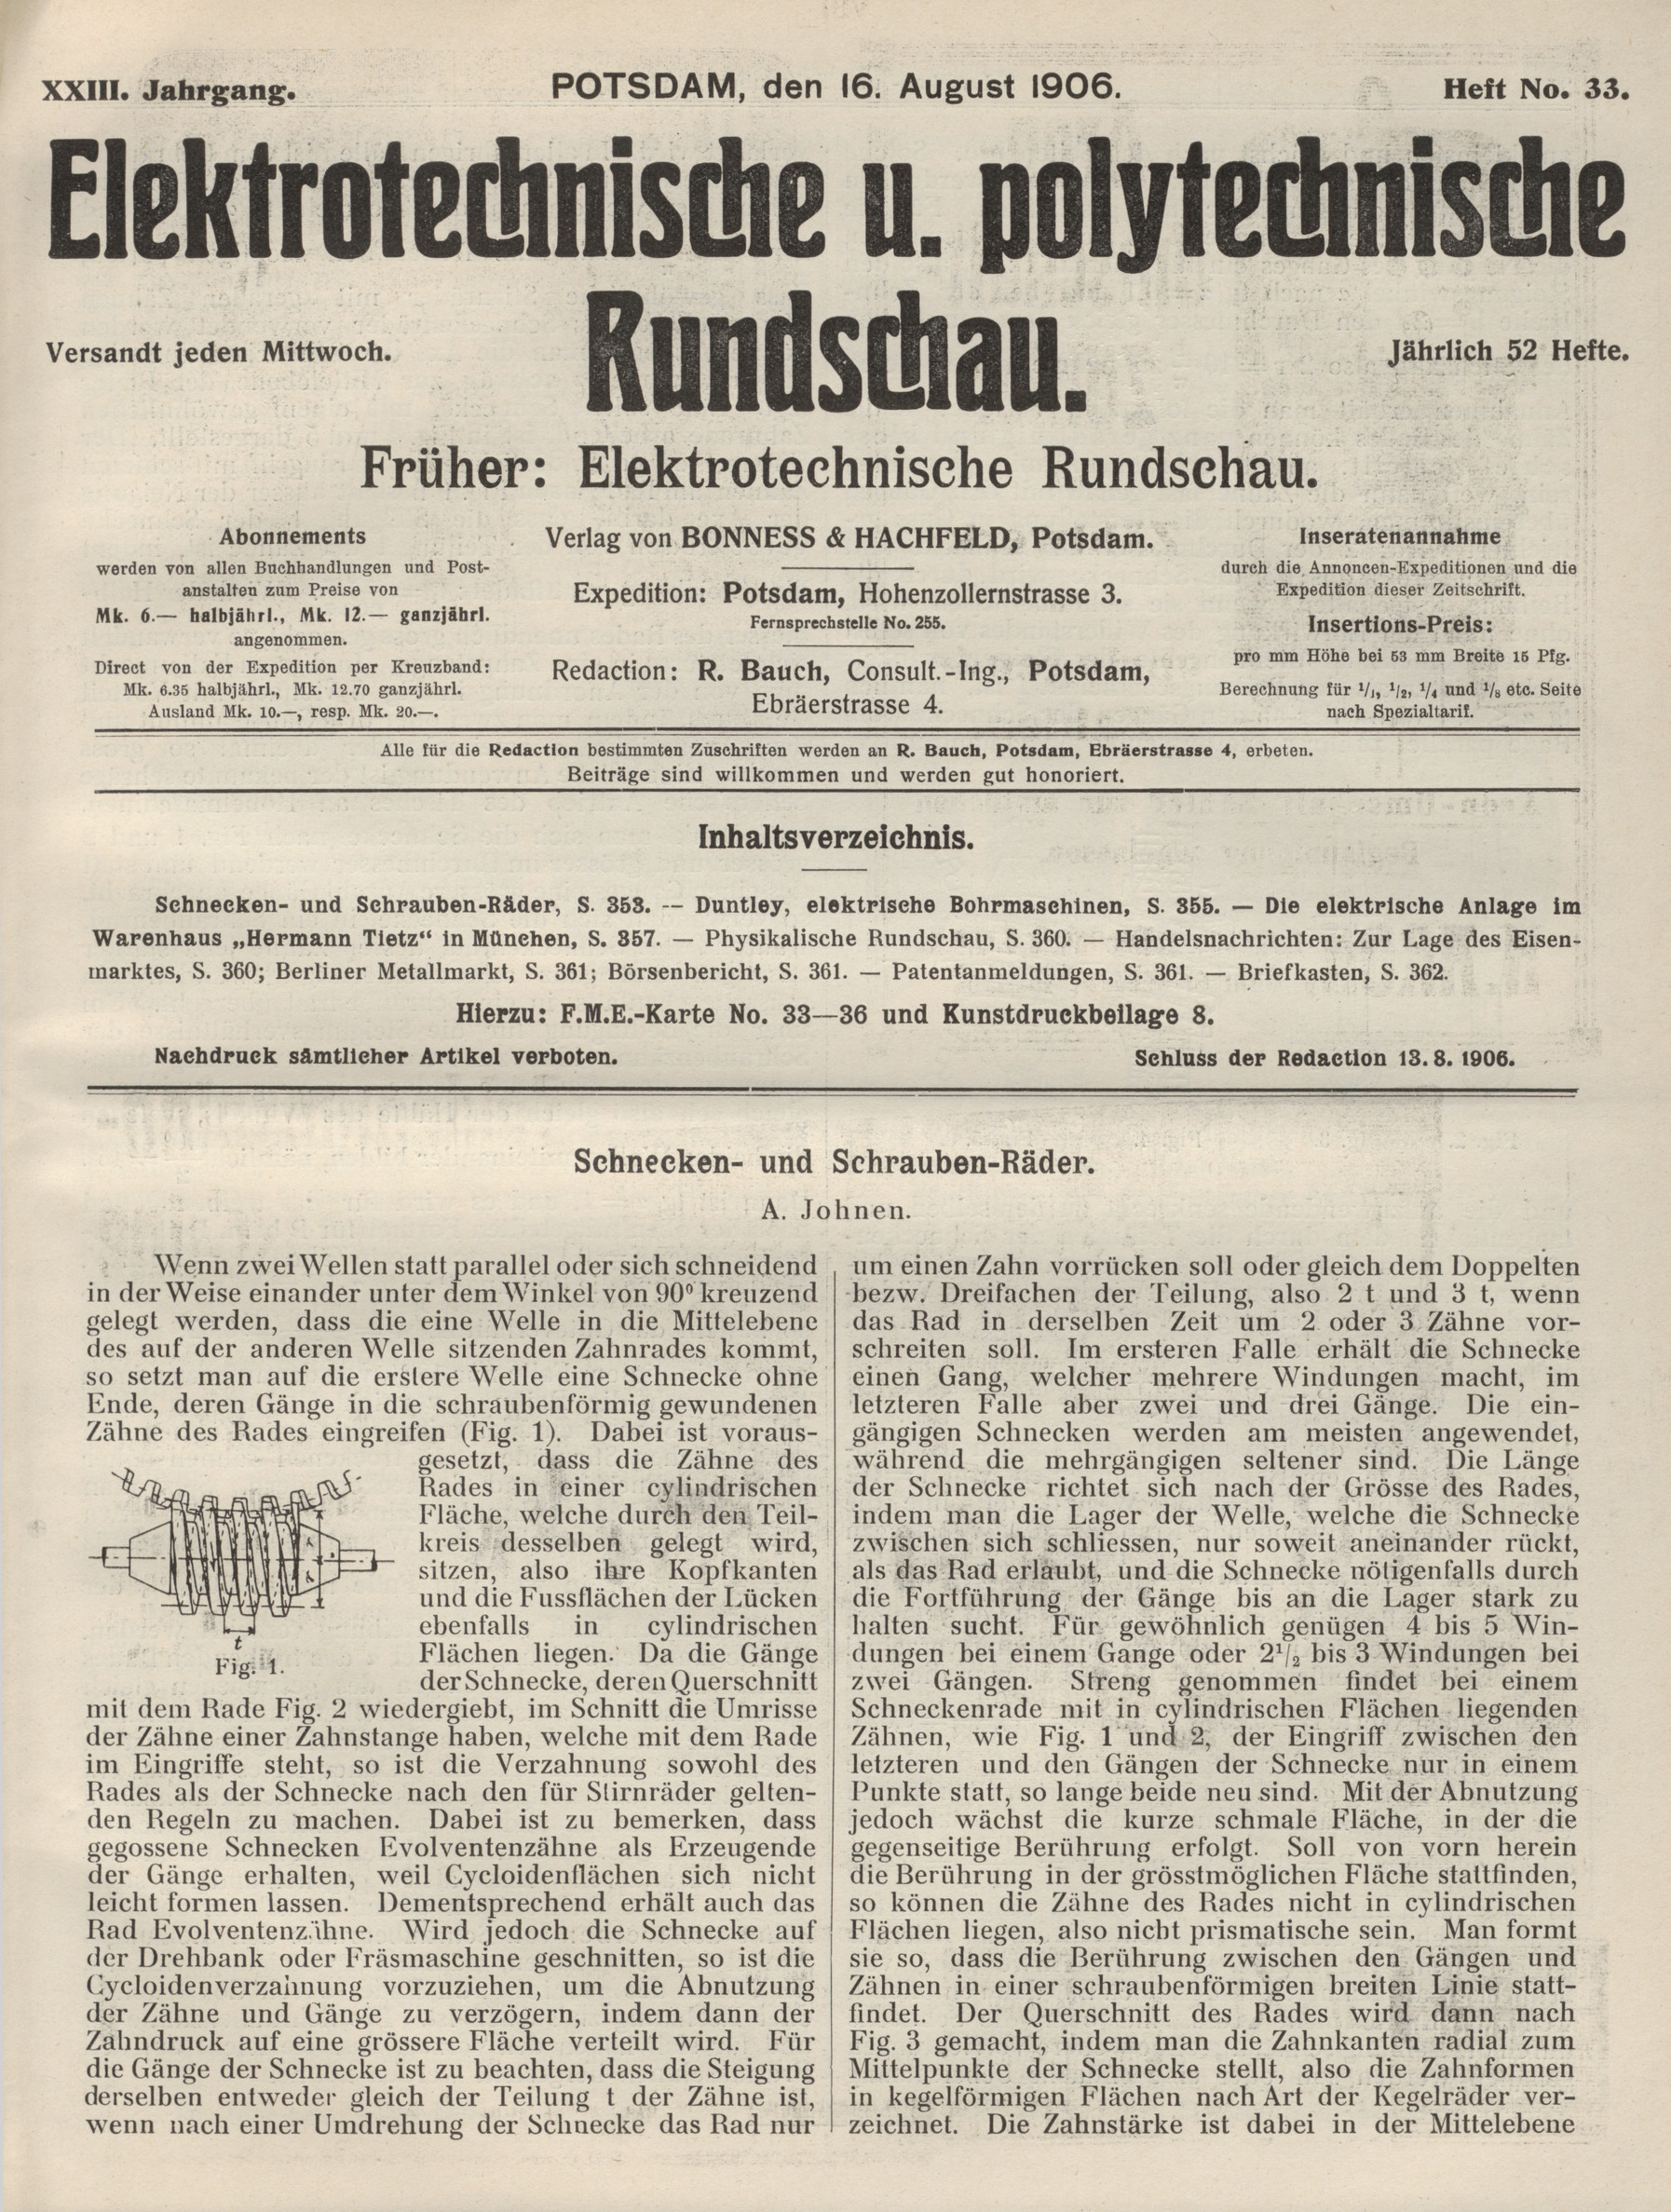 Elektrotechnische und polytechnische Rundschau, XXIII. Jahrgang, Heft No. 33